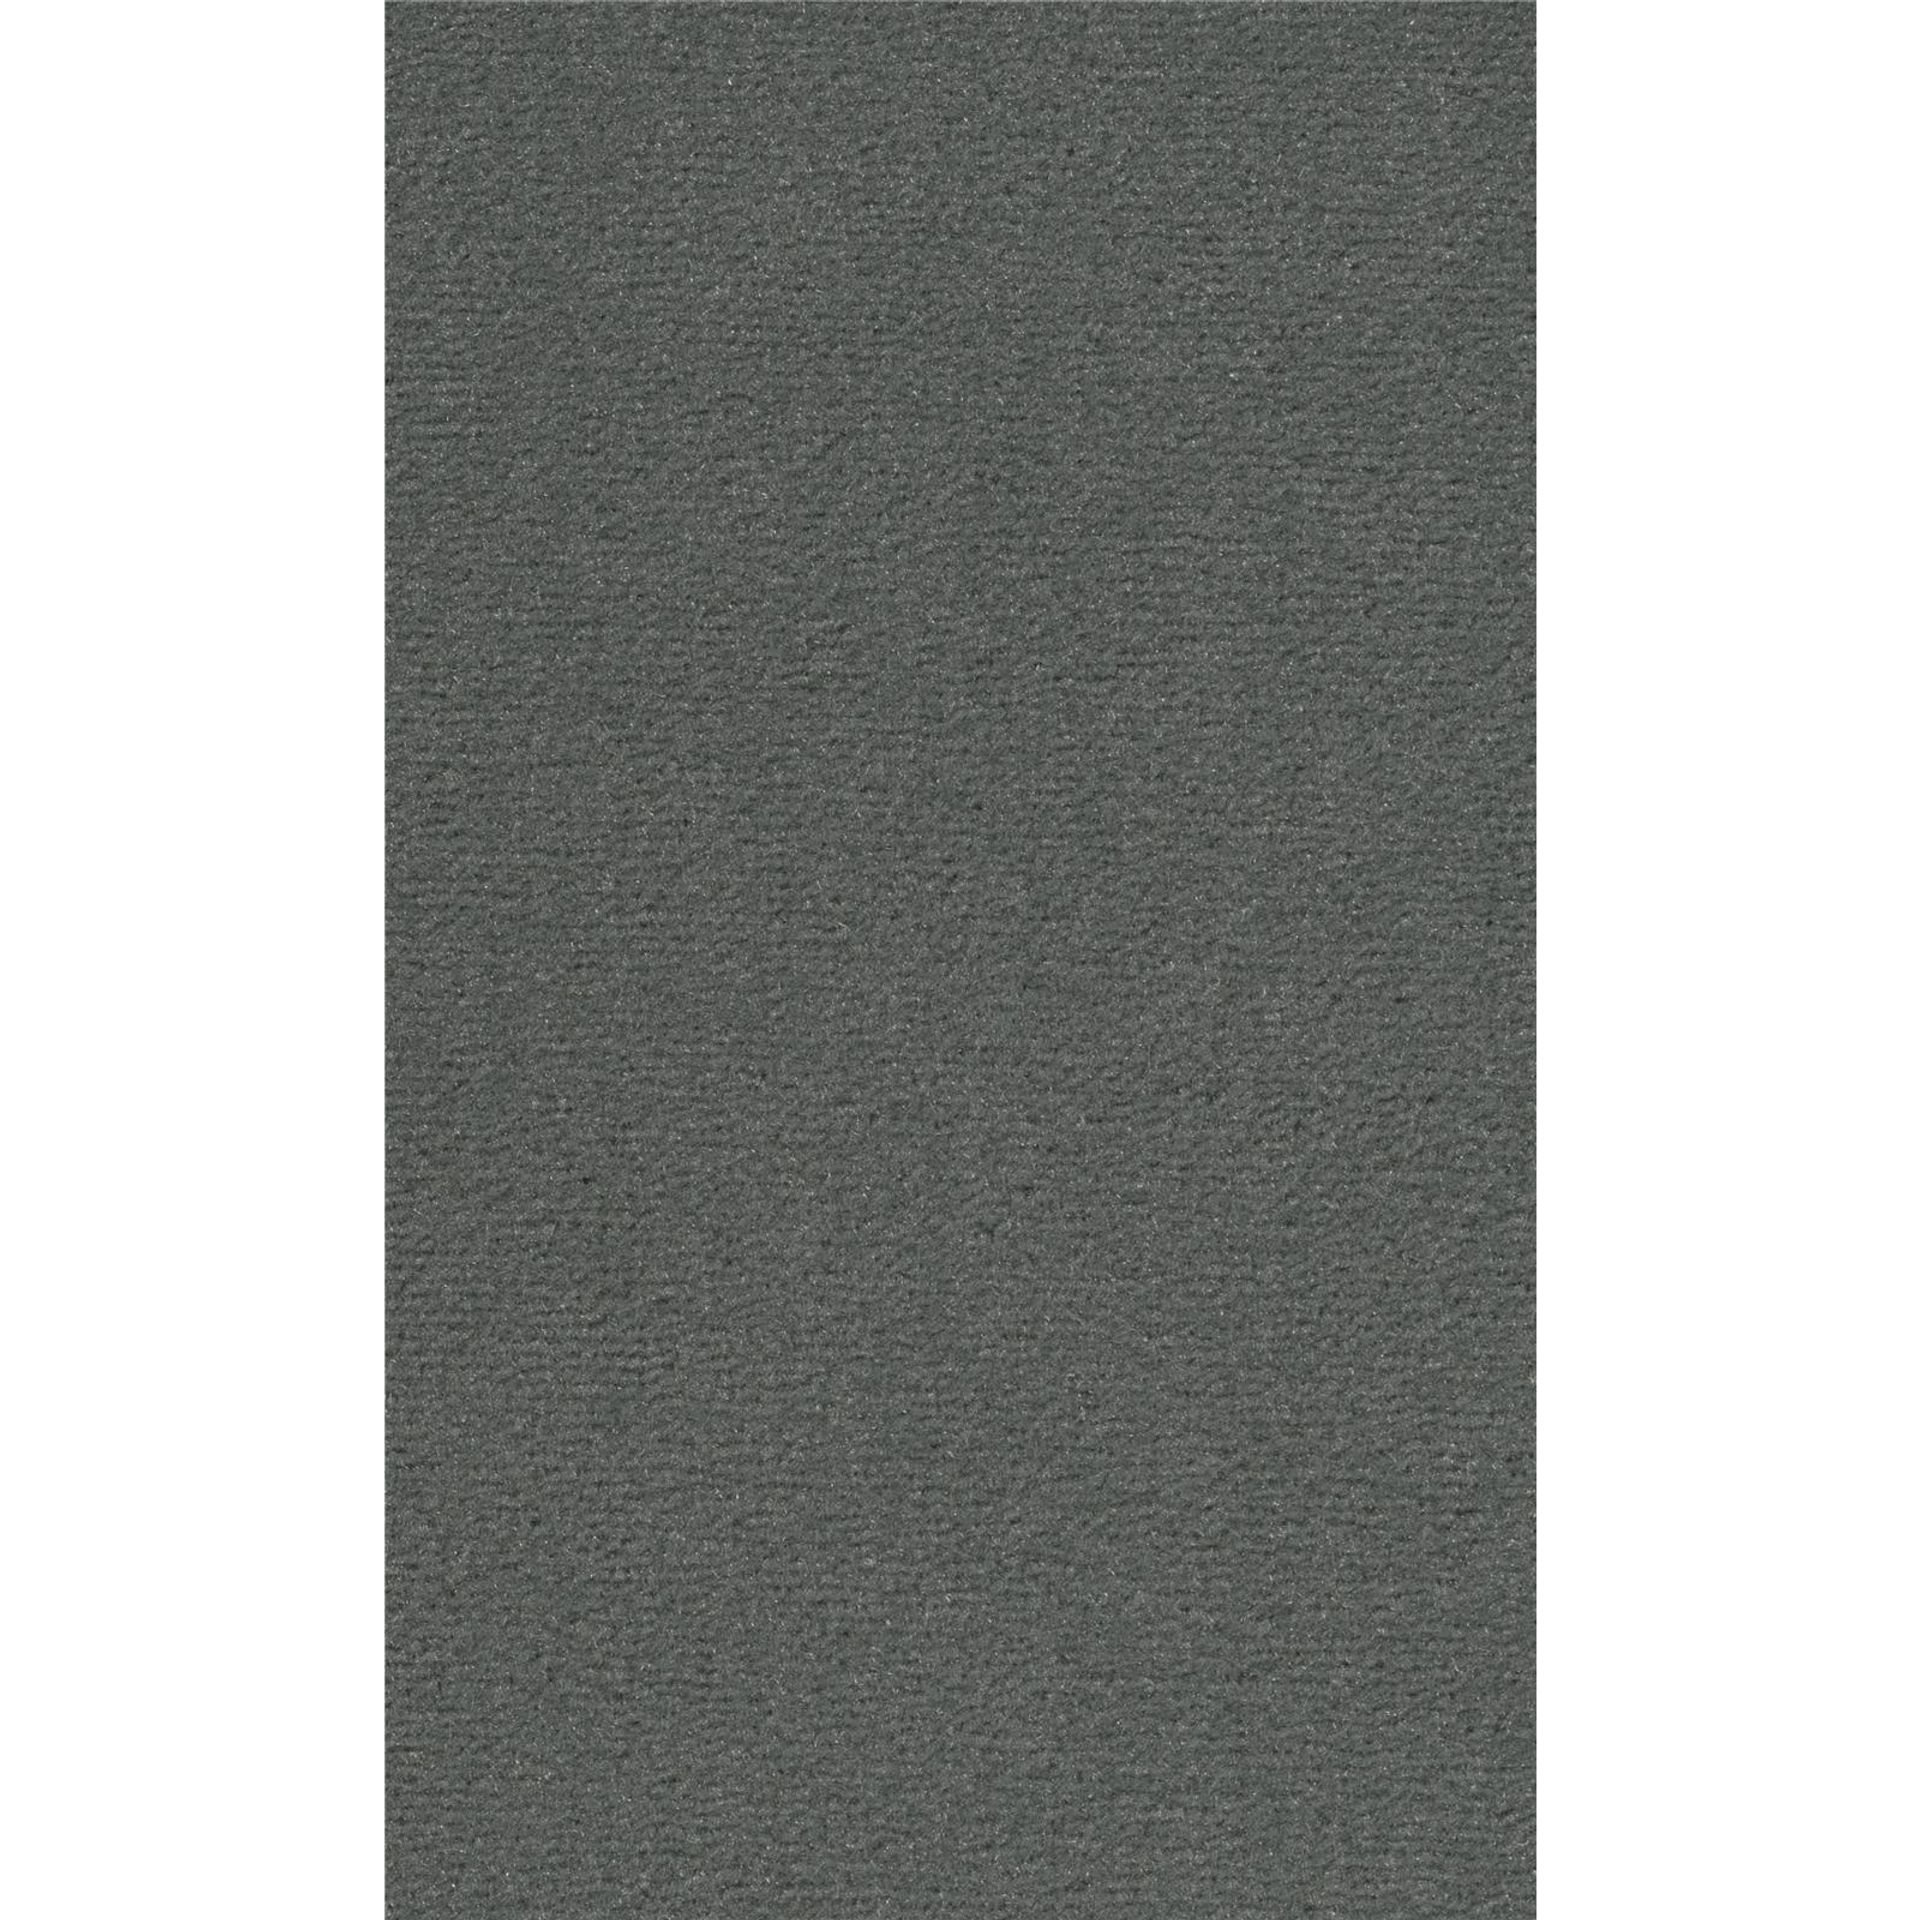 Teppichboden Vorwerk Passion 1021 BINGO Velours Grau 5Y89 - Rollenbreite 500 cm